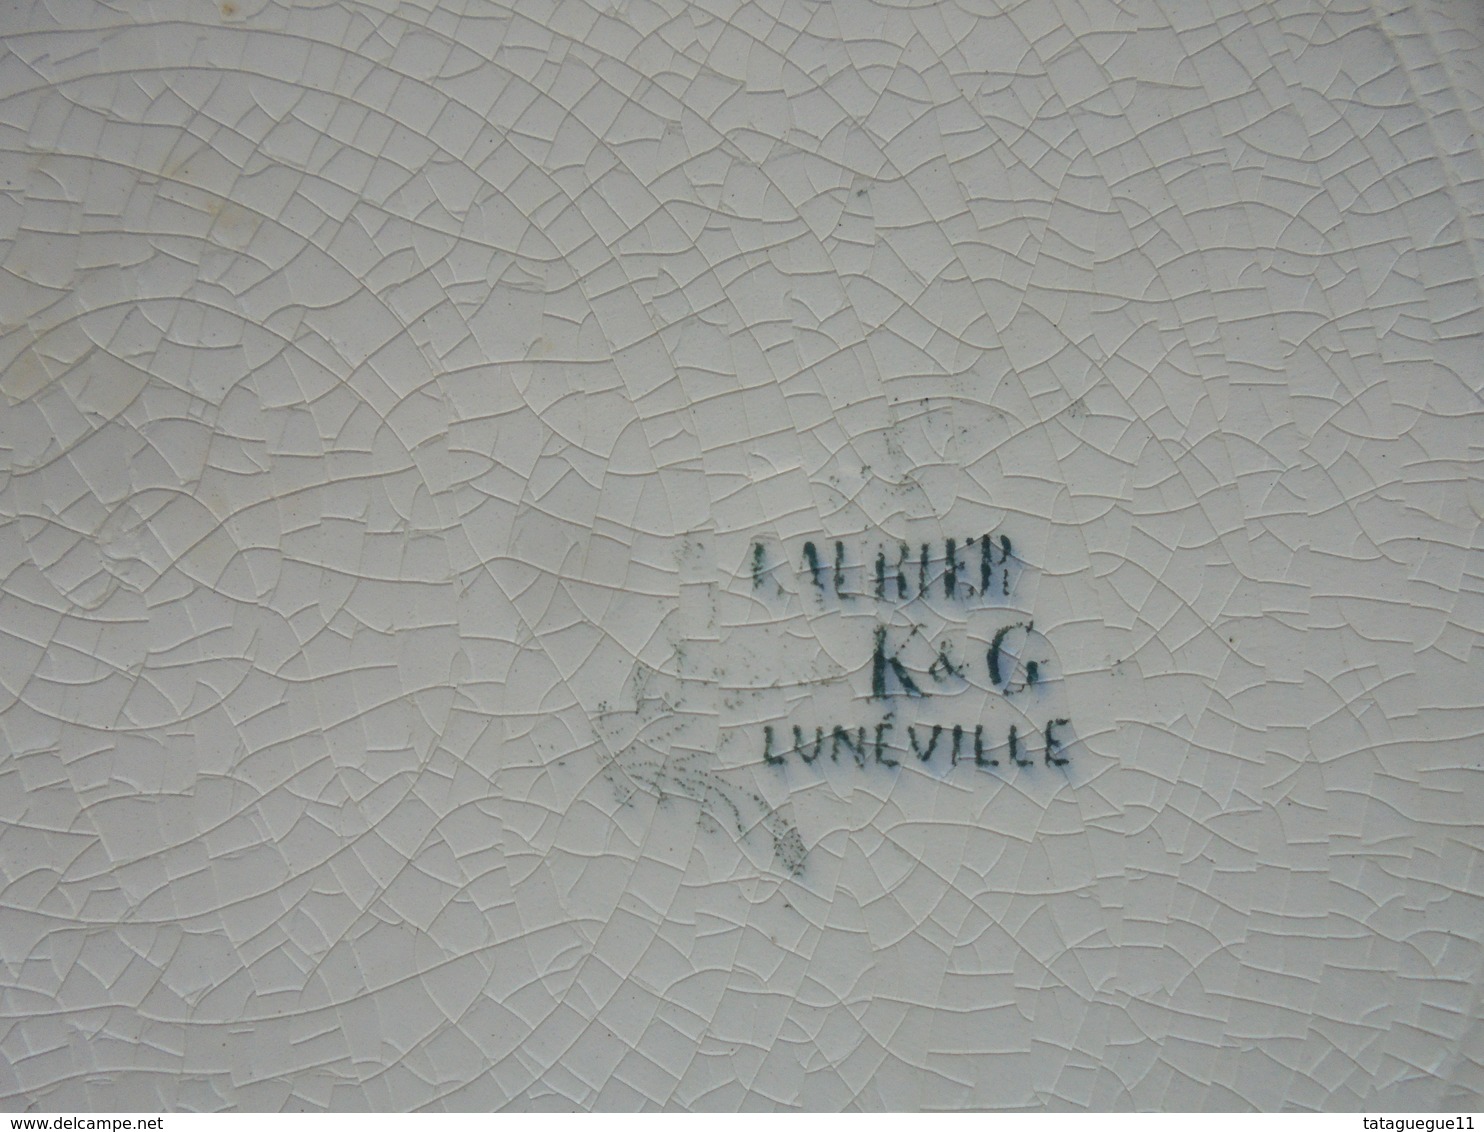 Ancien - 2 Grandes Assiettes KetG LUNEVILLE Décor Laurier - Lunéville (FRA)